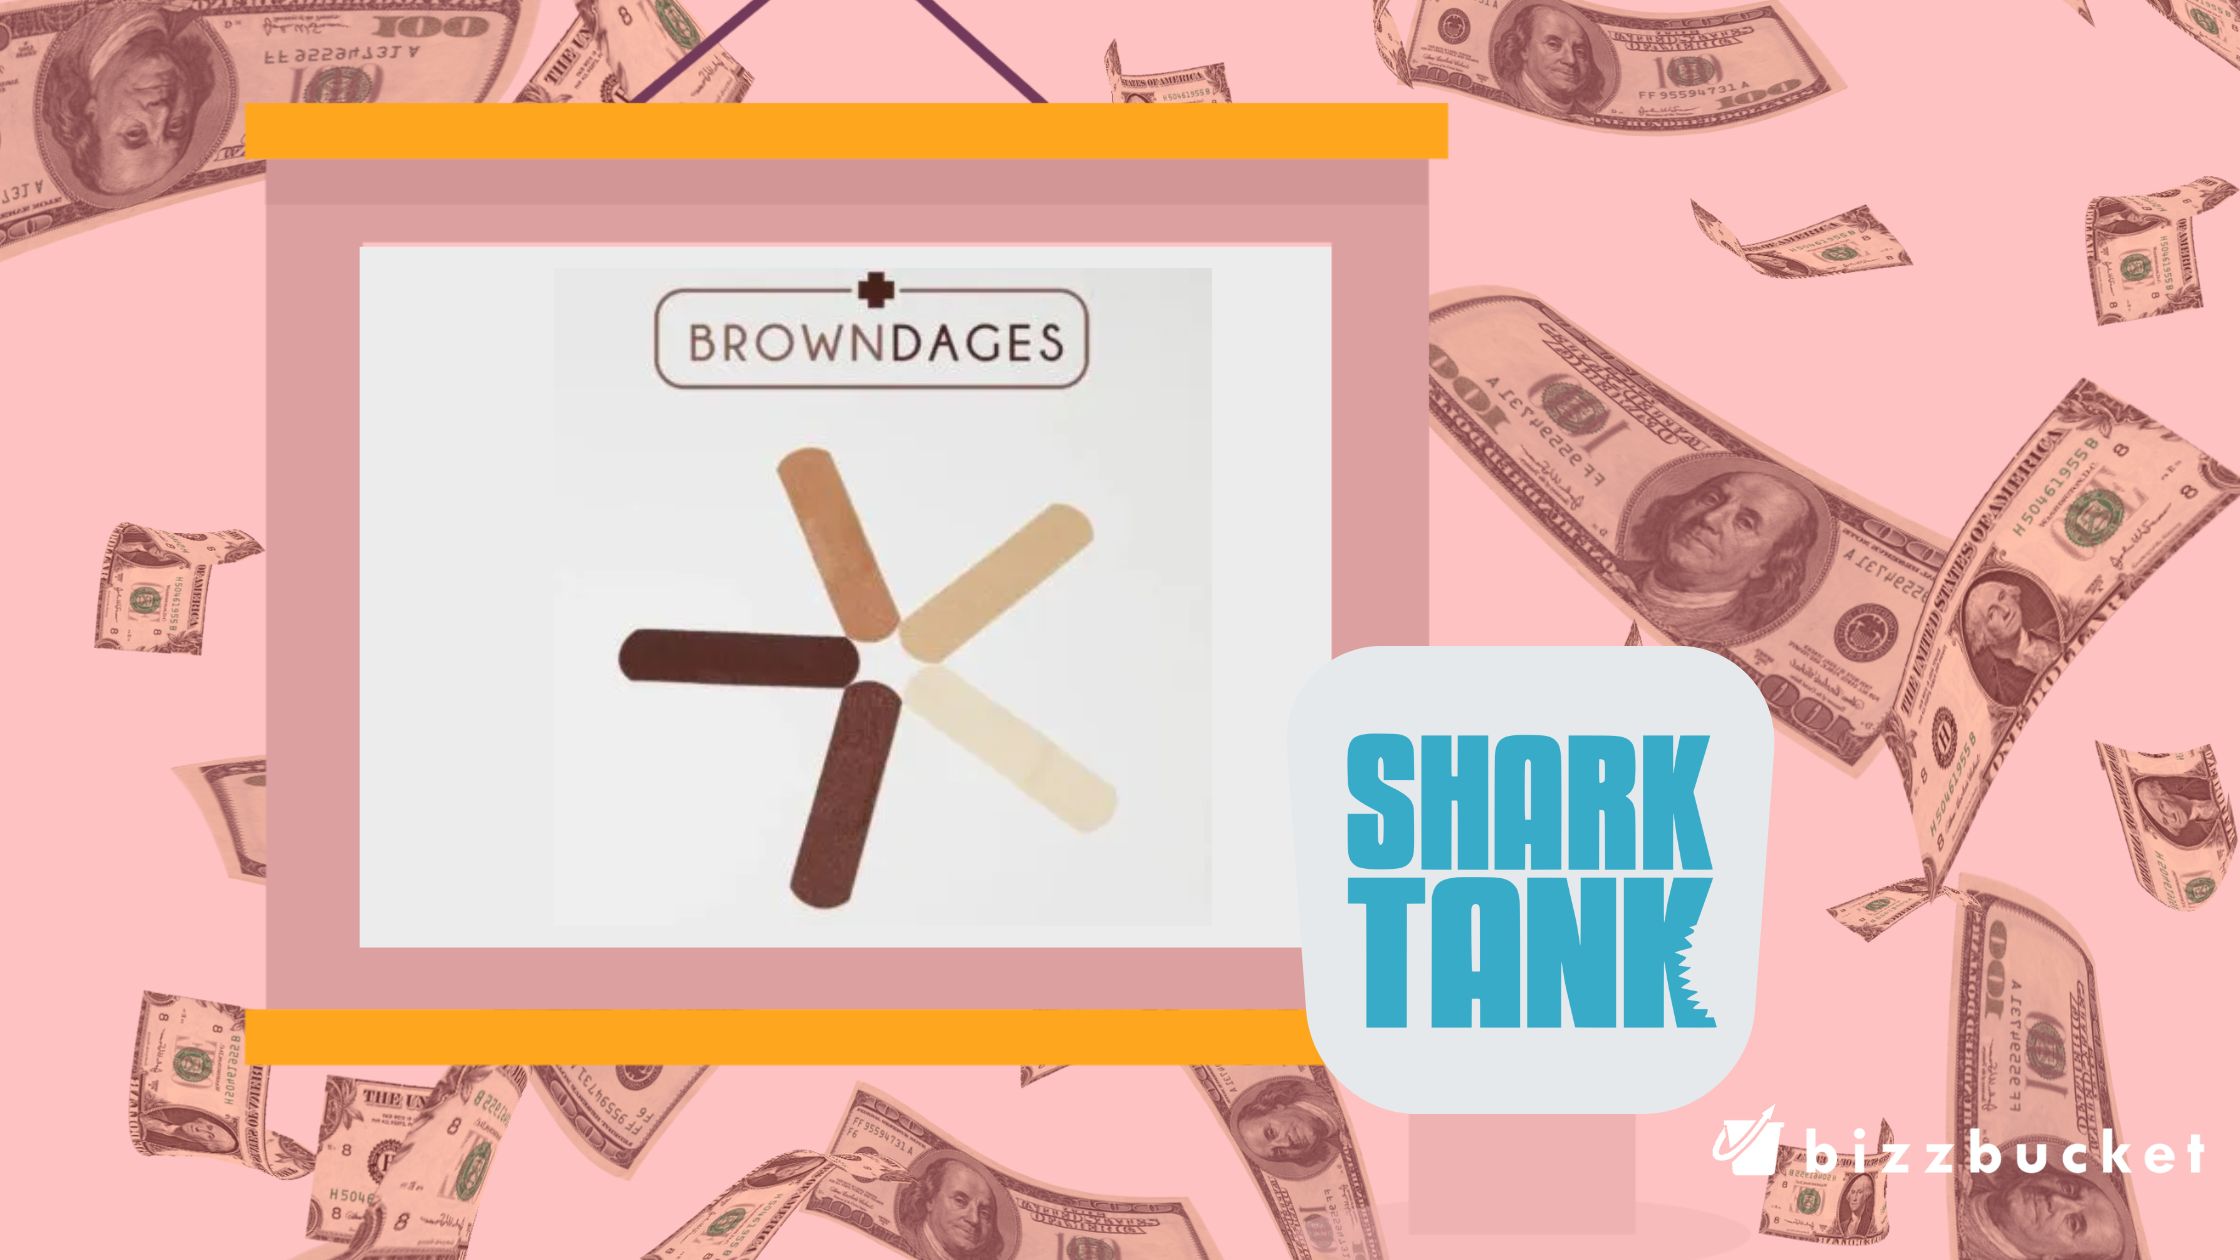 Browndages Bandages shark tank update